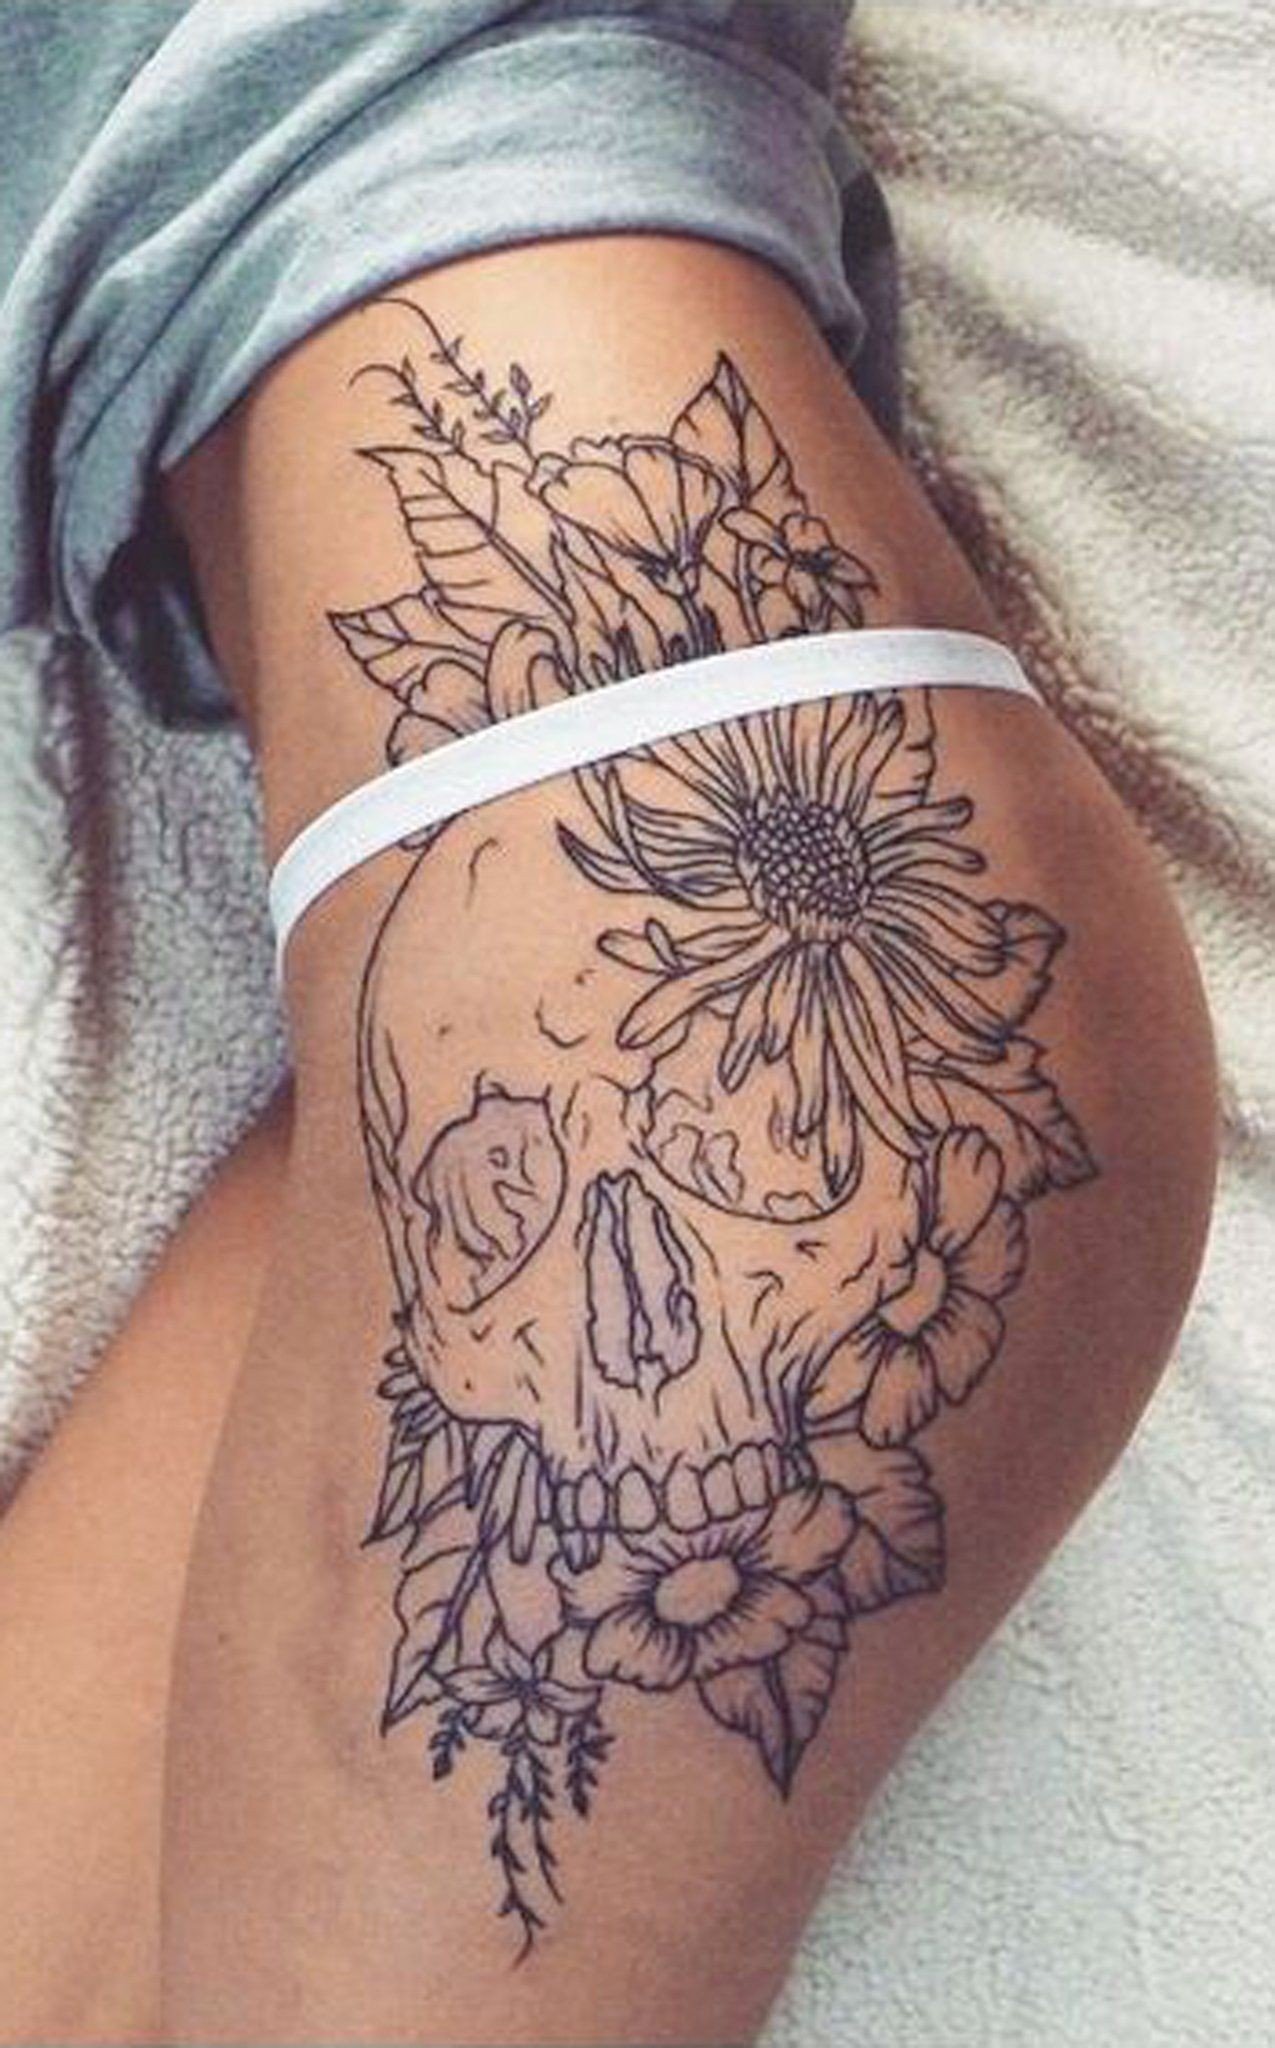 tattoo designs for womens side Best of 30 Women s Badass Hip Tattoo Ideas Pinterest